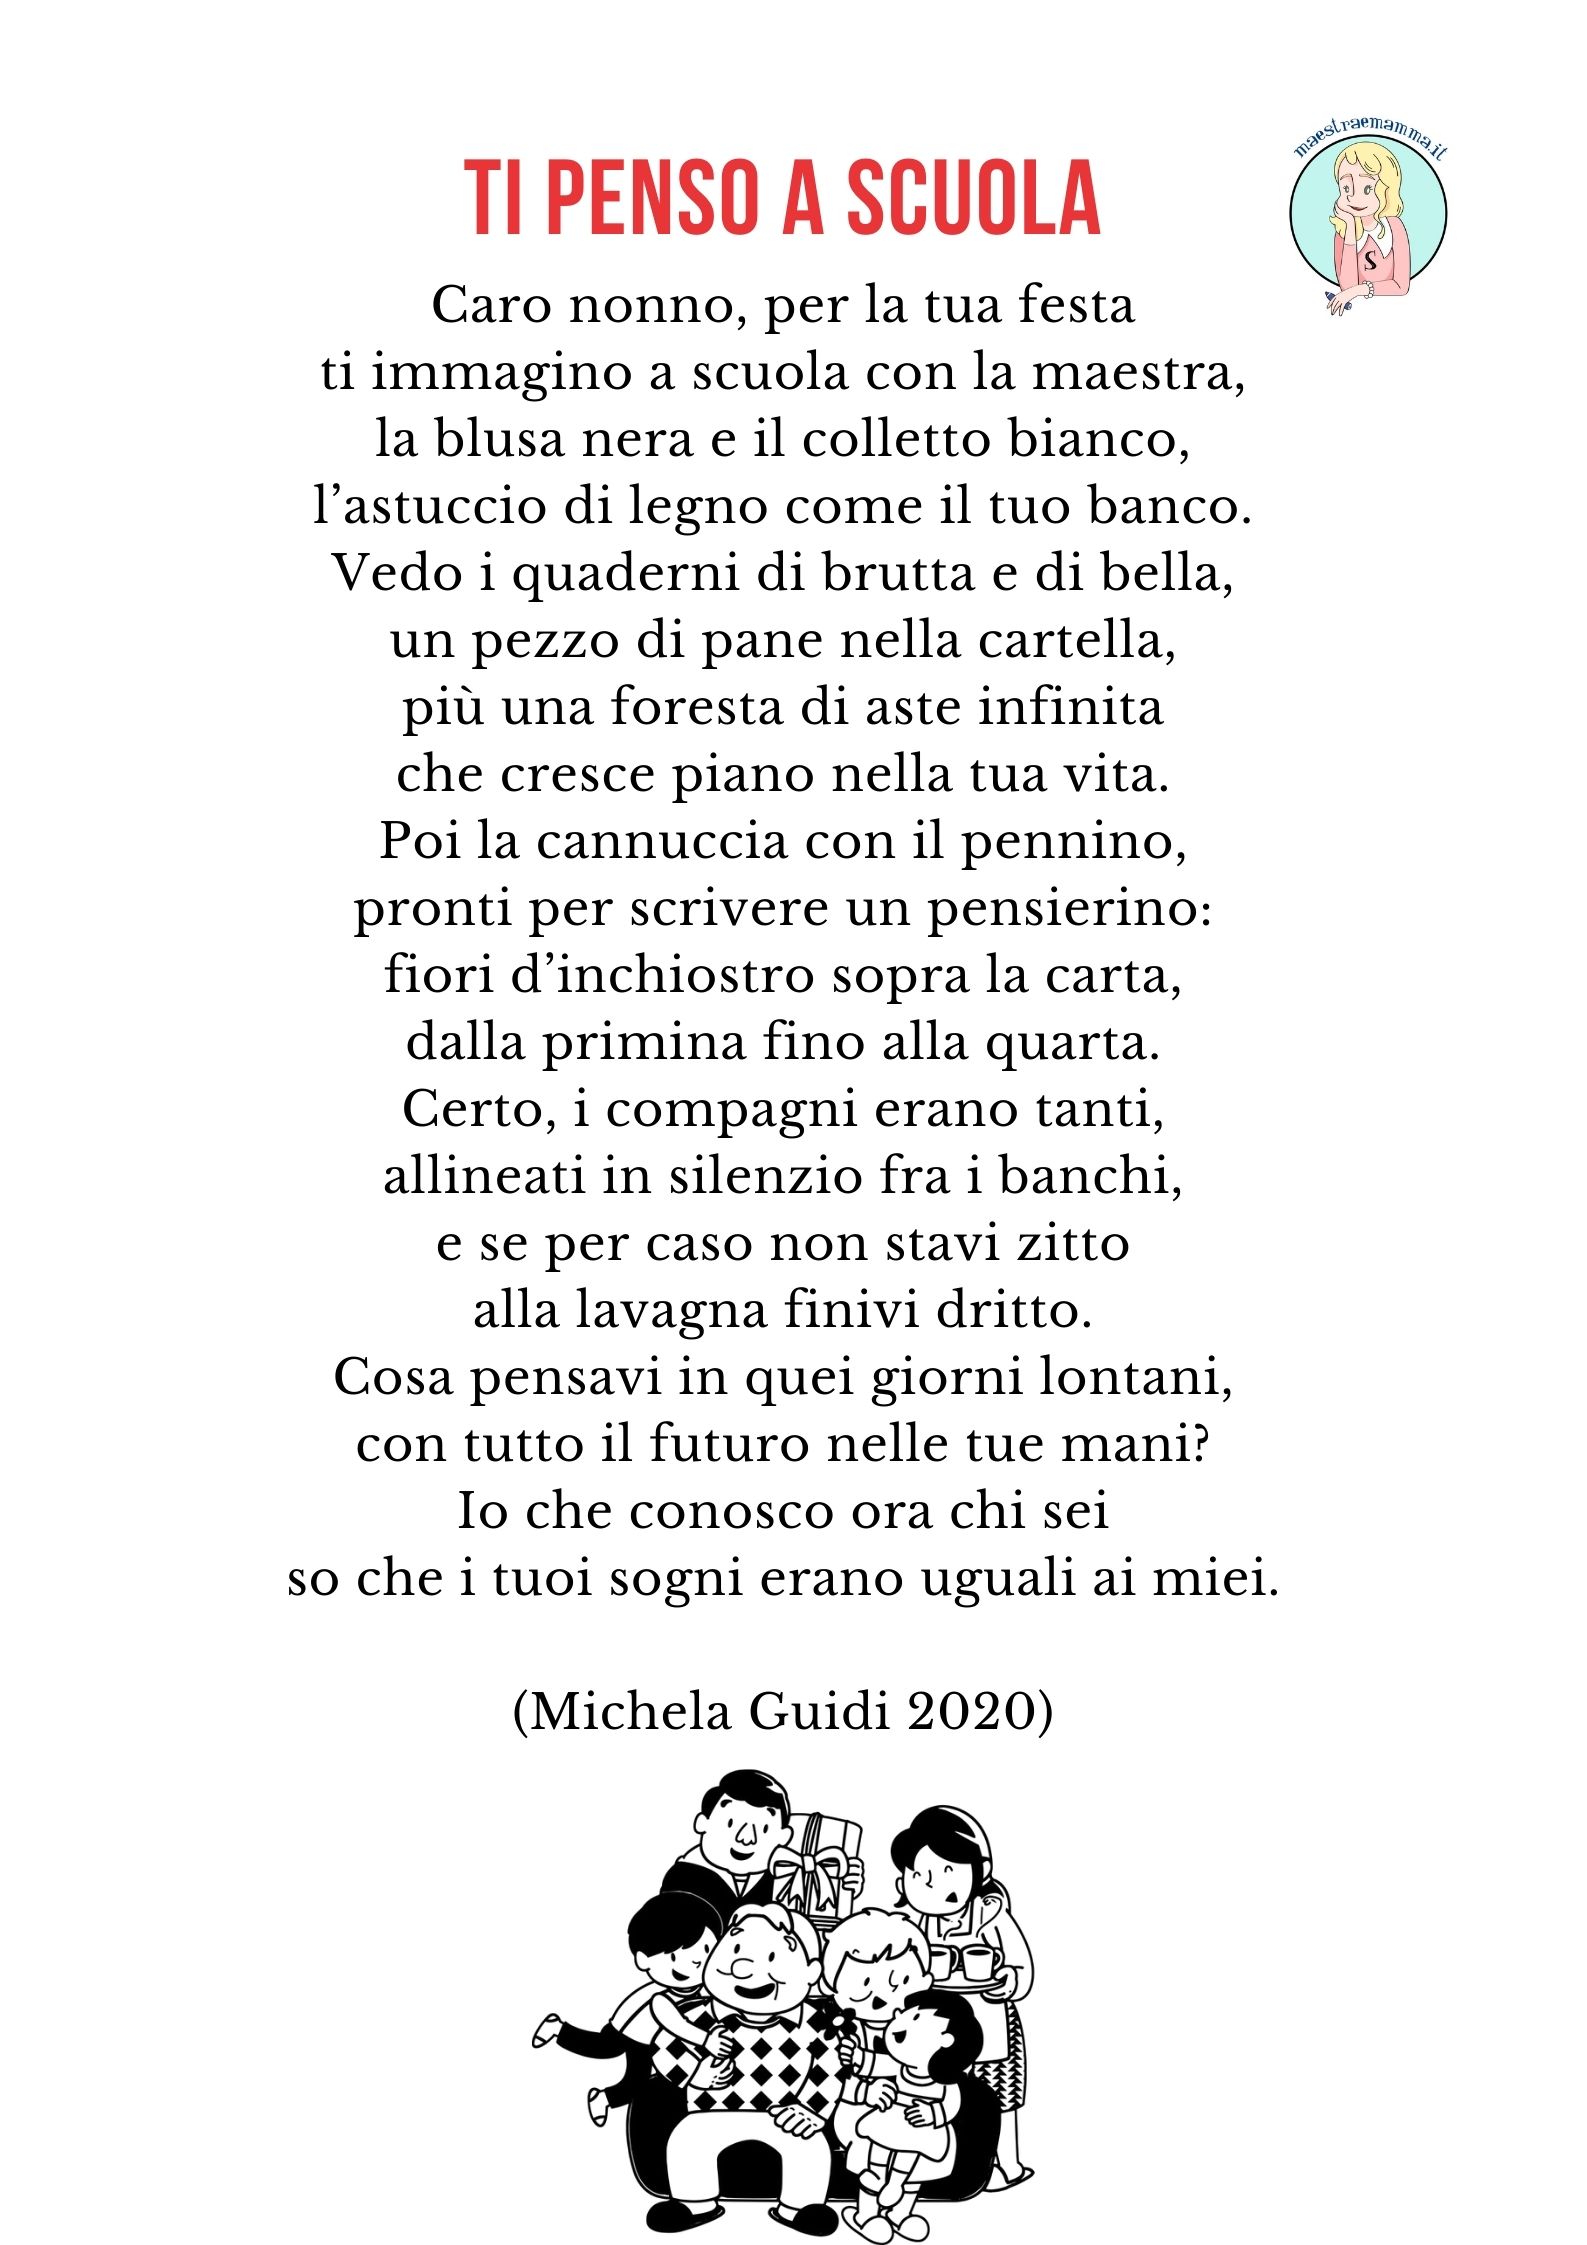 TI PENSO A SCUOLA – poesia di Michela Guidi per la festa dei nonni